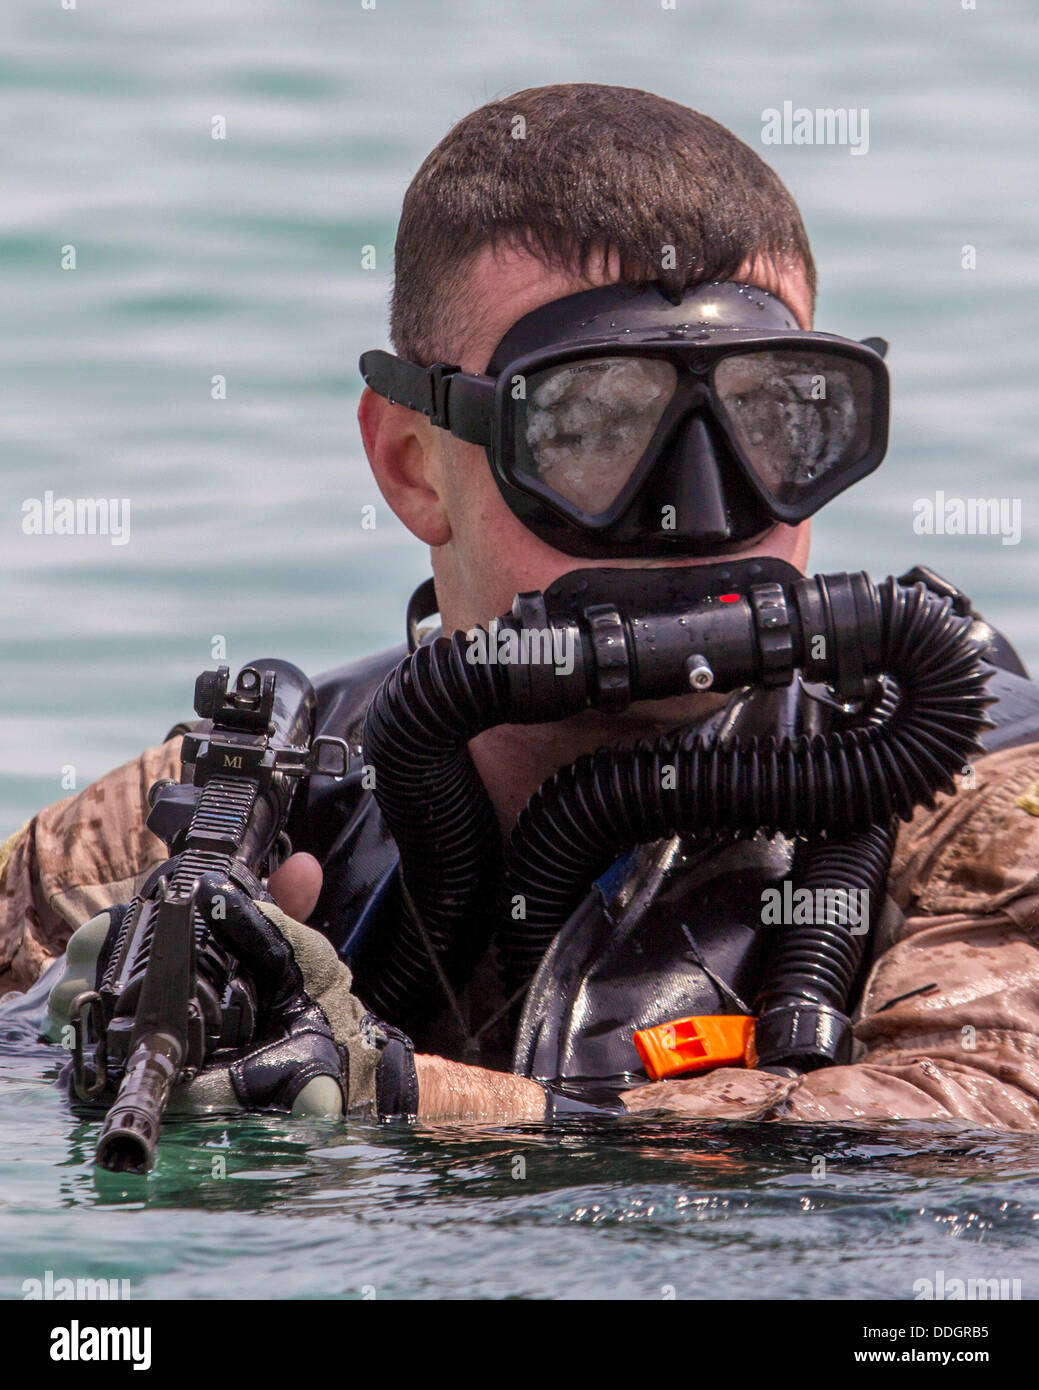 Golf von Oman, USS Keserage. 01. September 2013. Ein US-Marine Spezialoperationen Force Reconnaissance Kommando während der amphibischen Insertion Ausbildung 1. September 2013 in den Golf von Oman. Bildnachweis: Planetpix/Alamy Live-Nachrichten Stockfoto